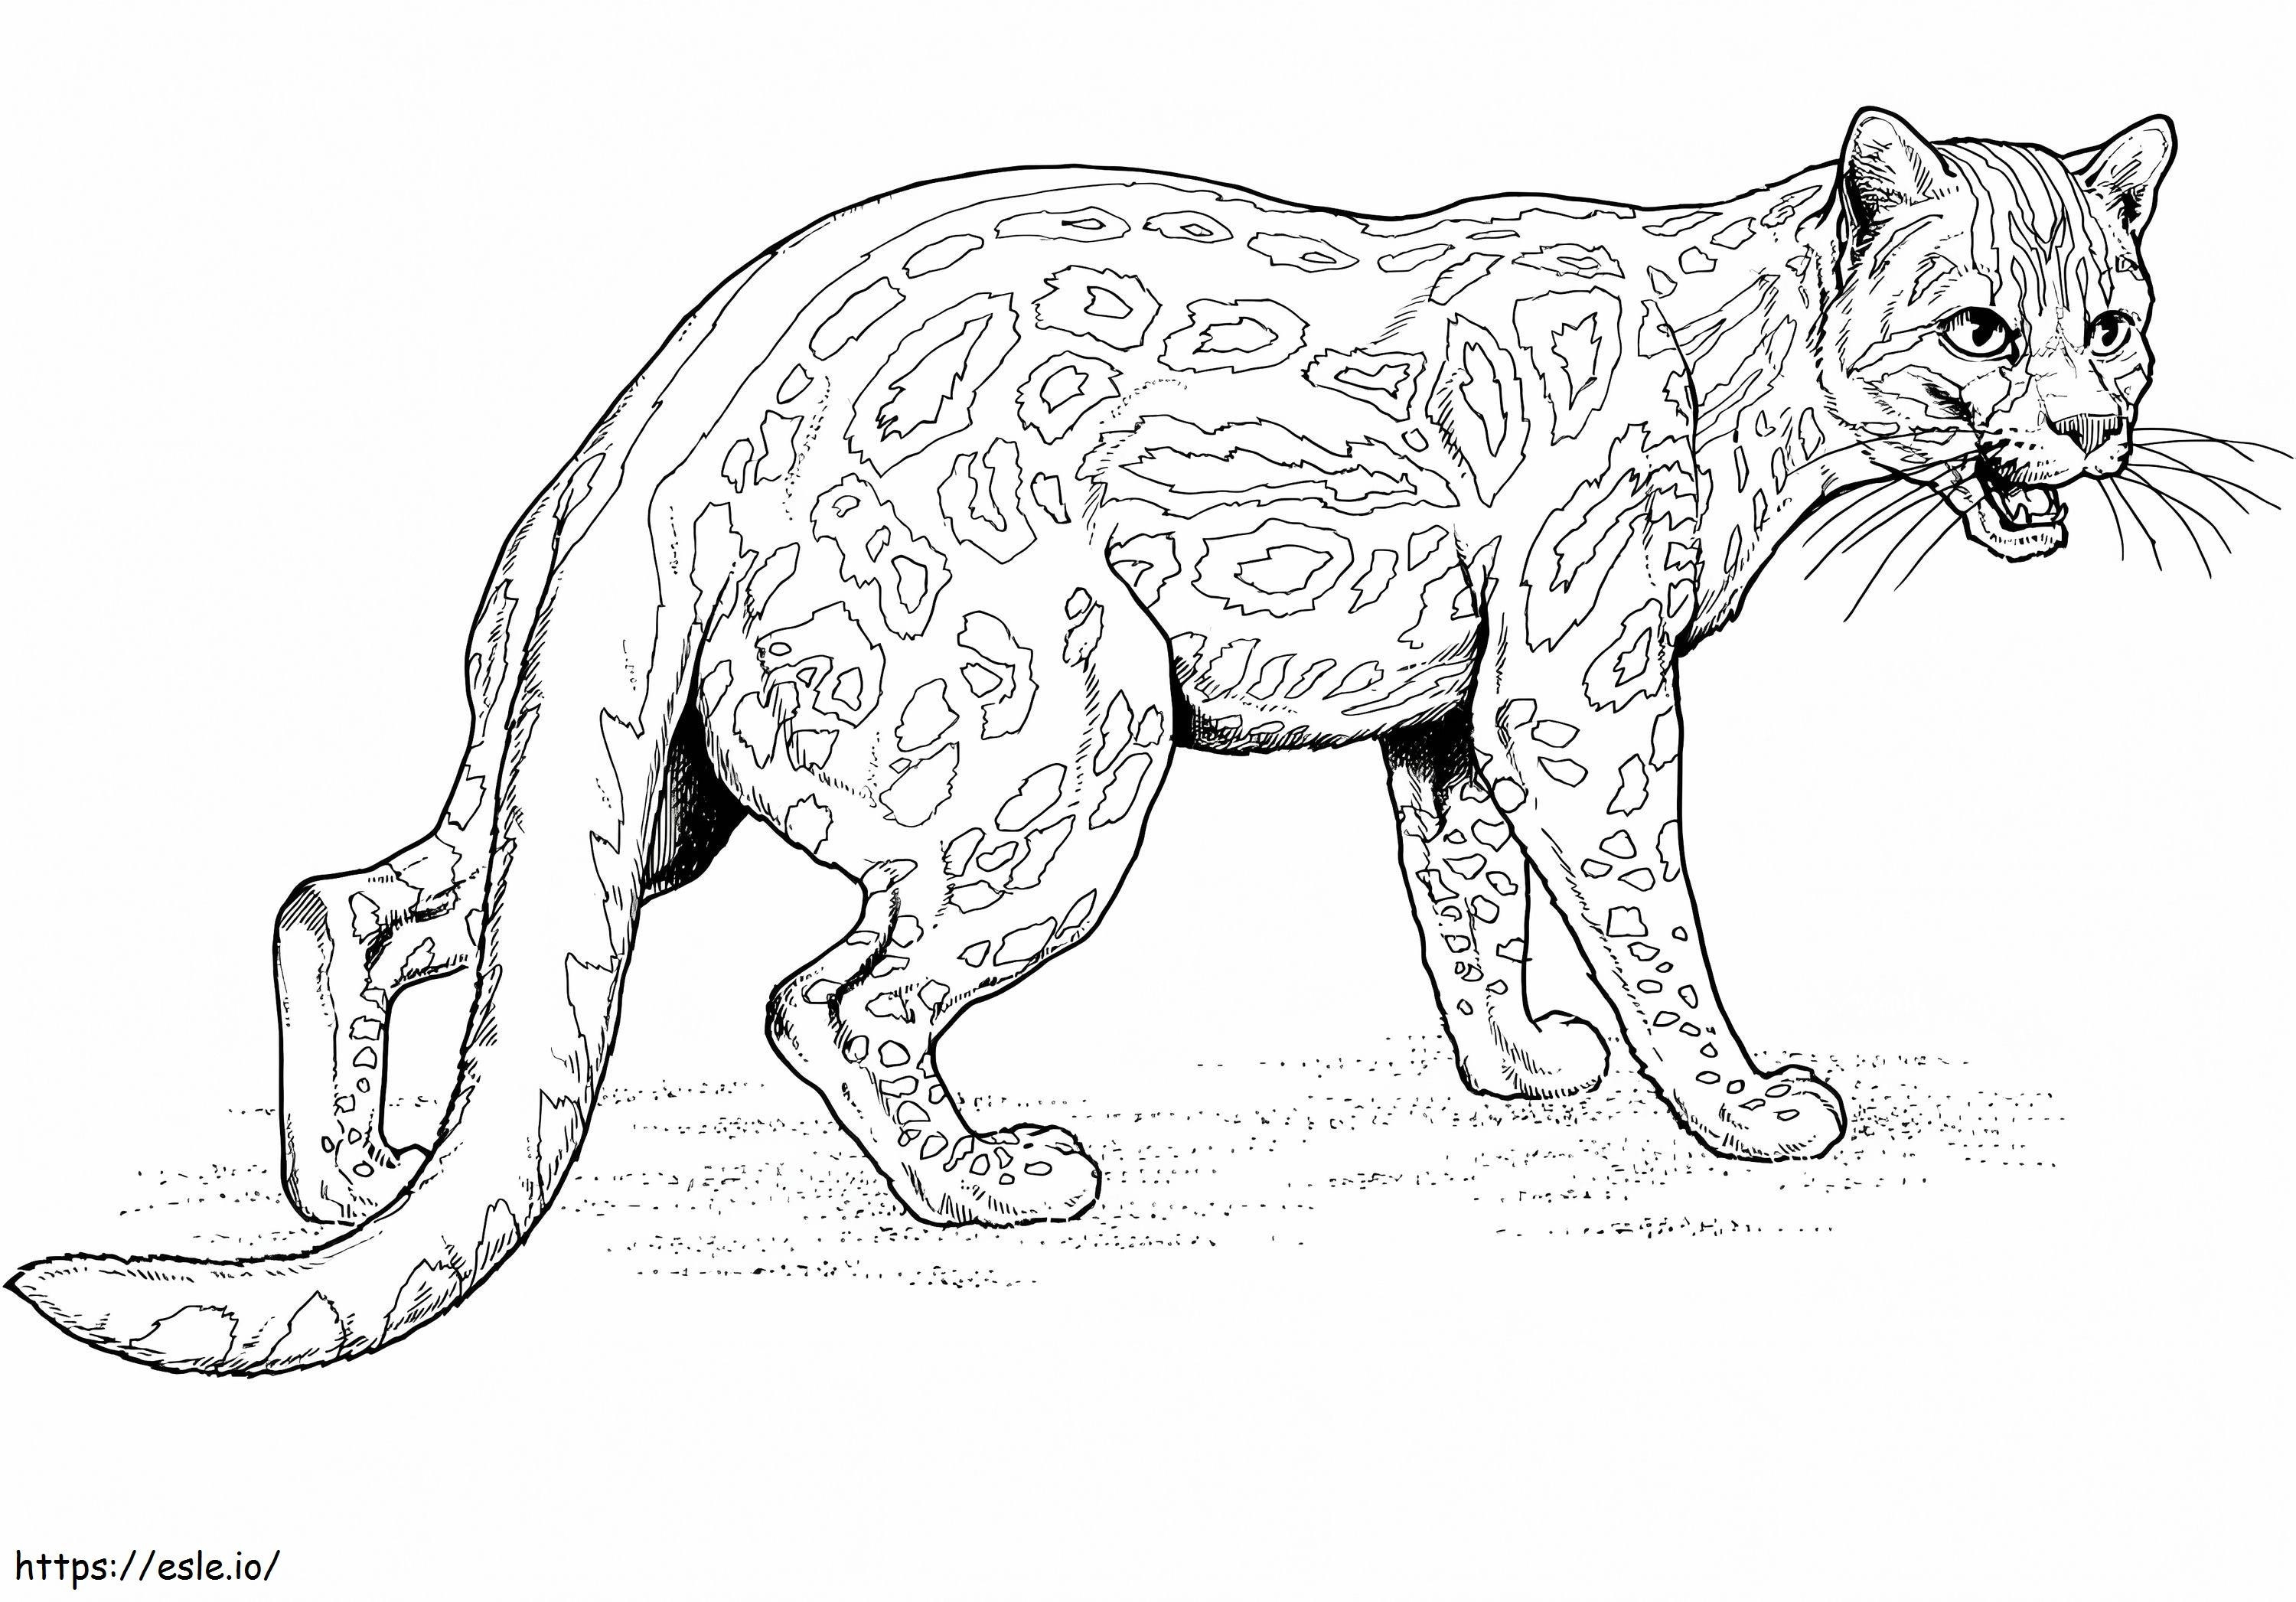 Gattopardo arrabbiato da colorare